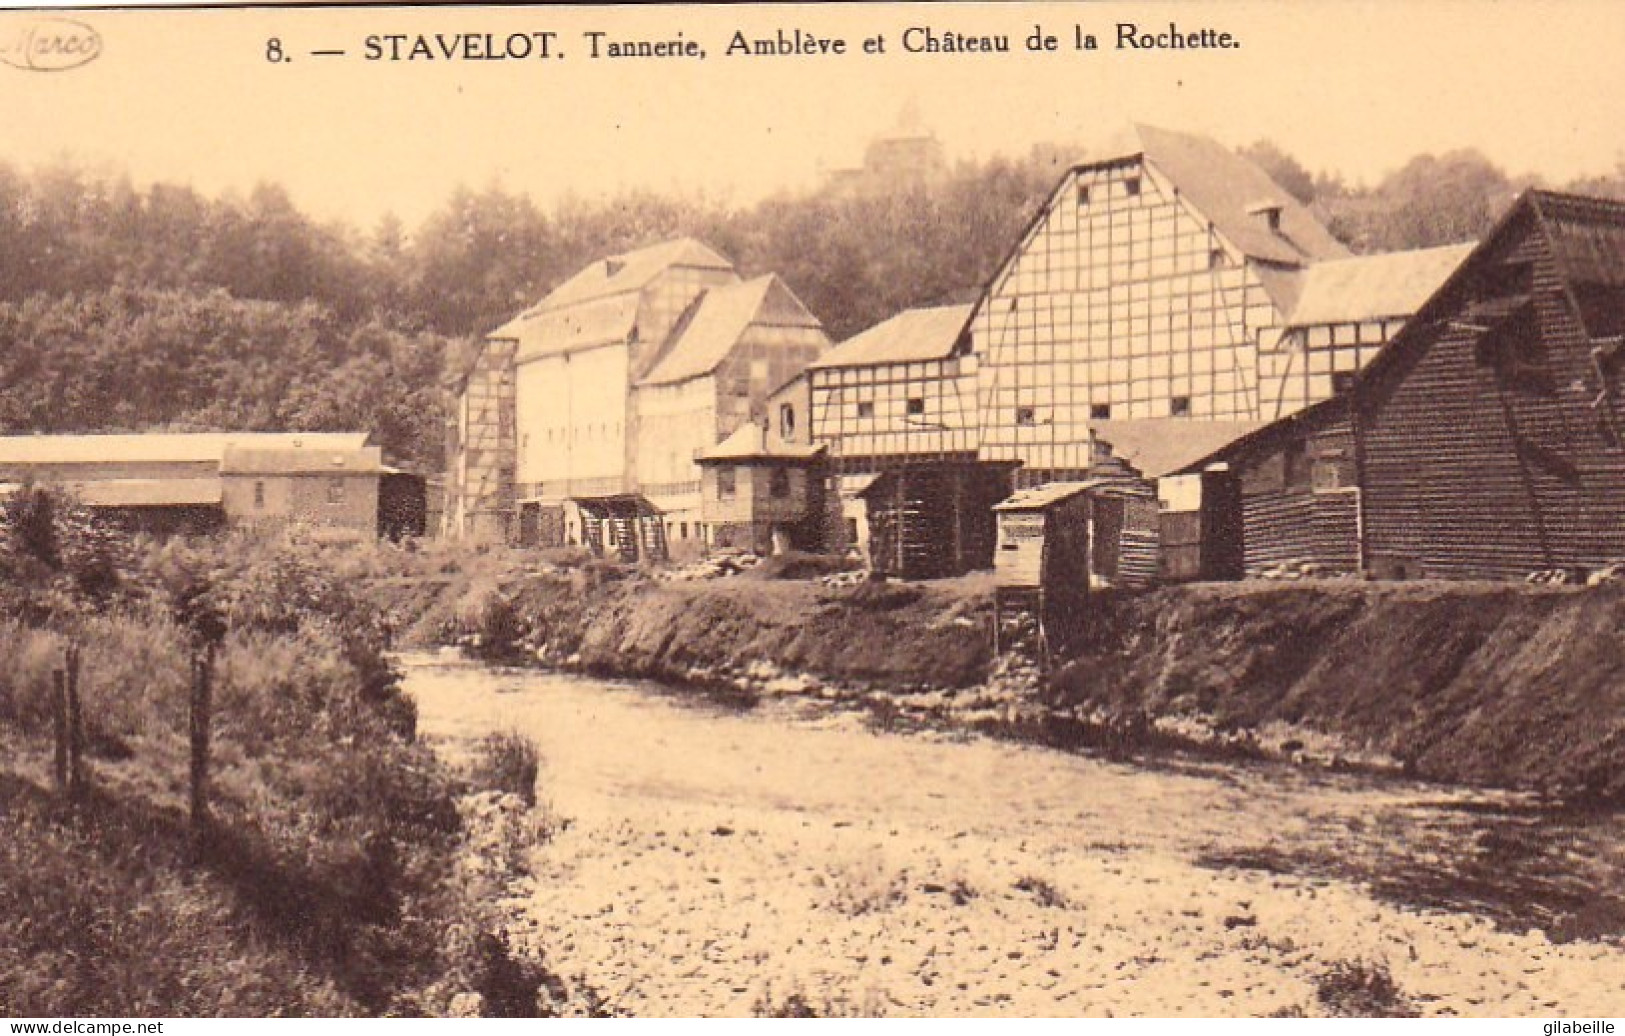  STAVELOT - Tannerie - Ambleve Et Chateau De La Rochette - Stavelot